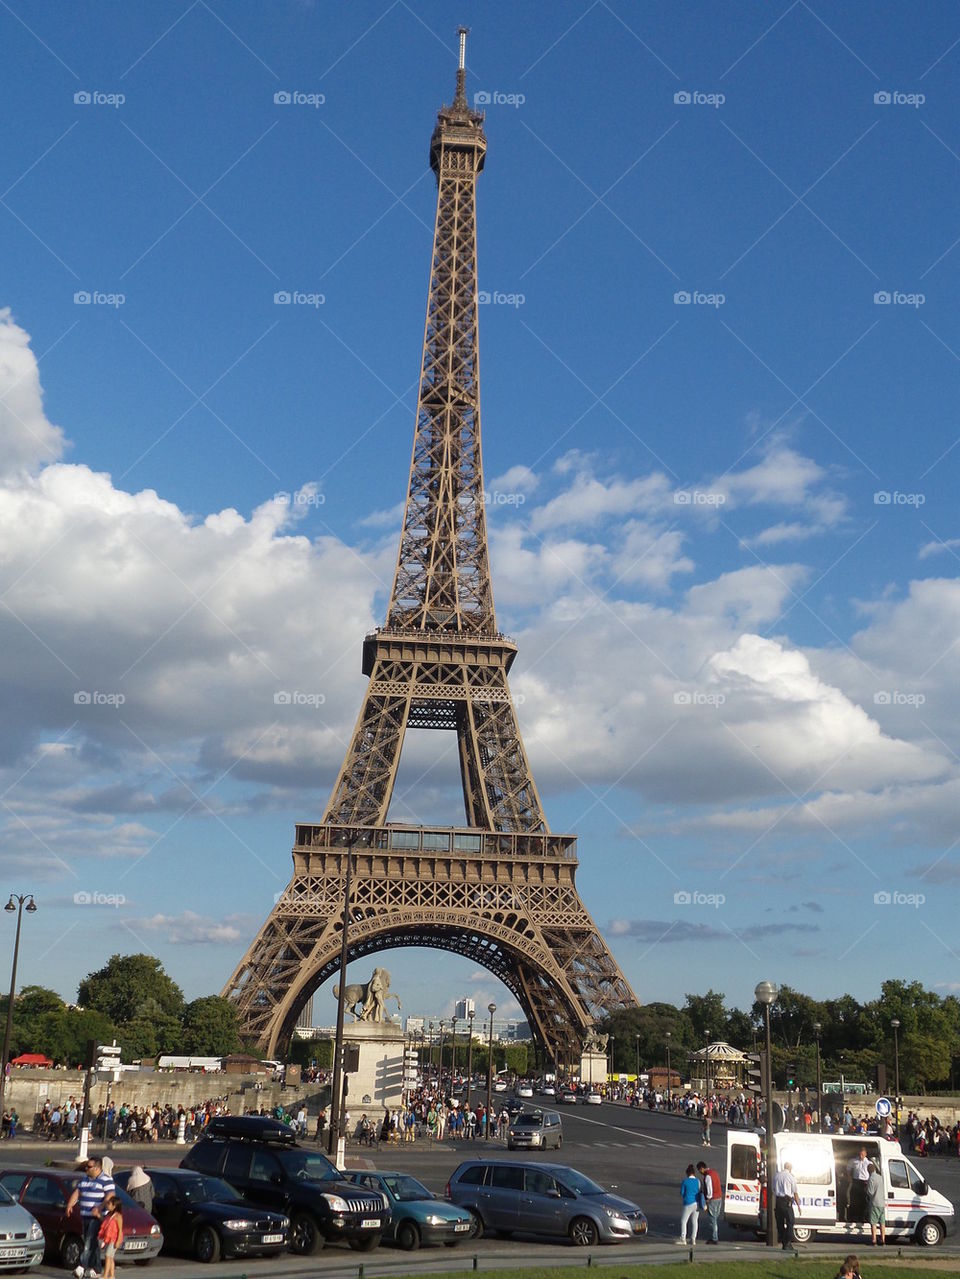 Eiffel Tower on my camera